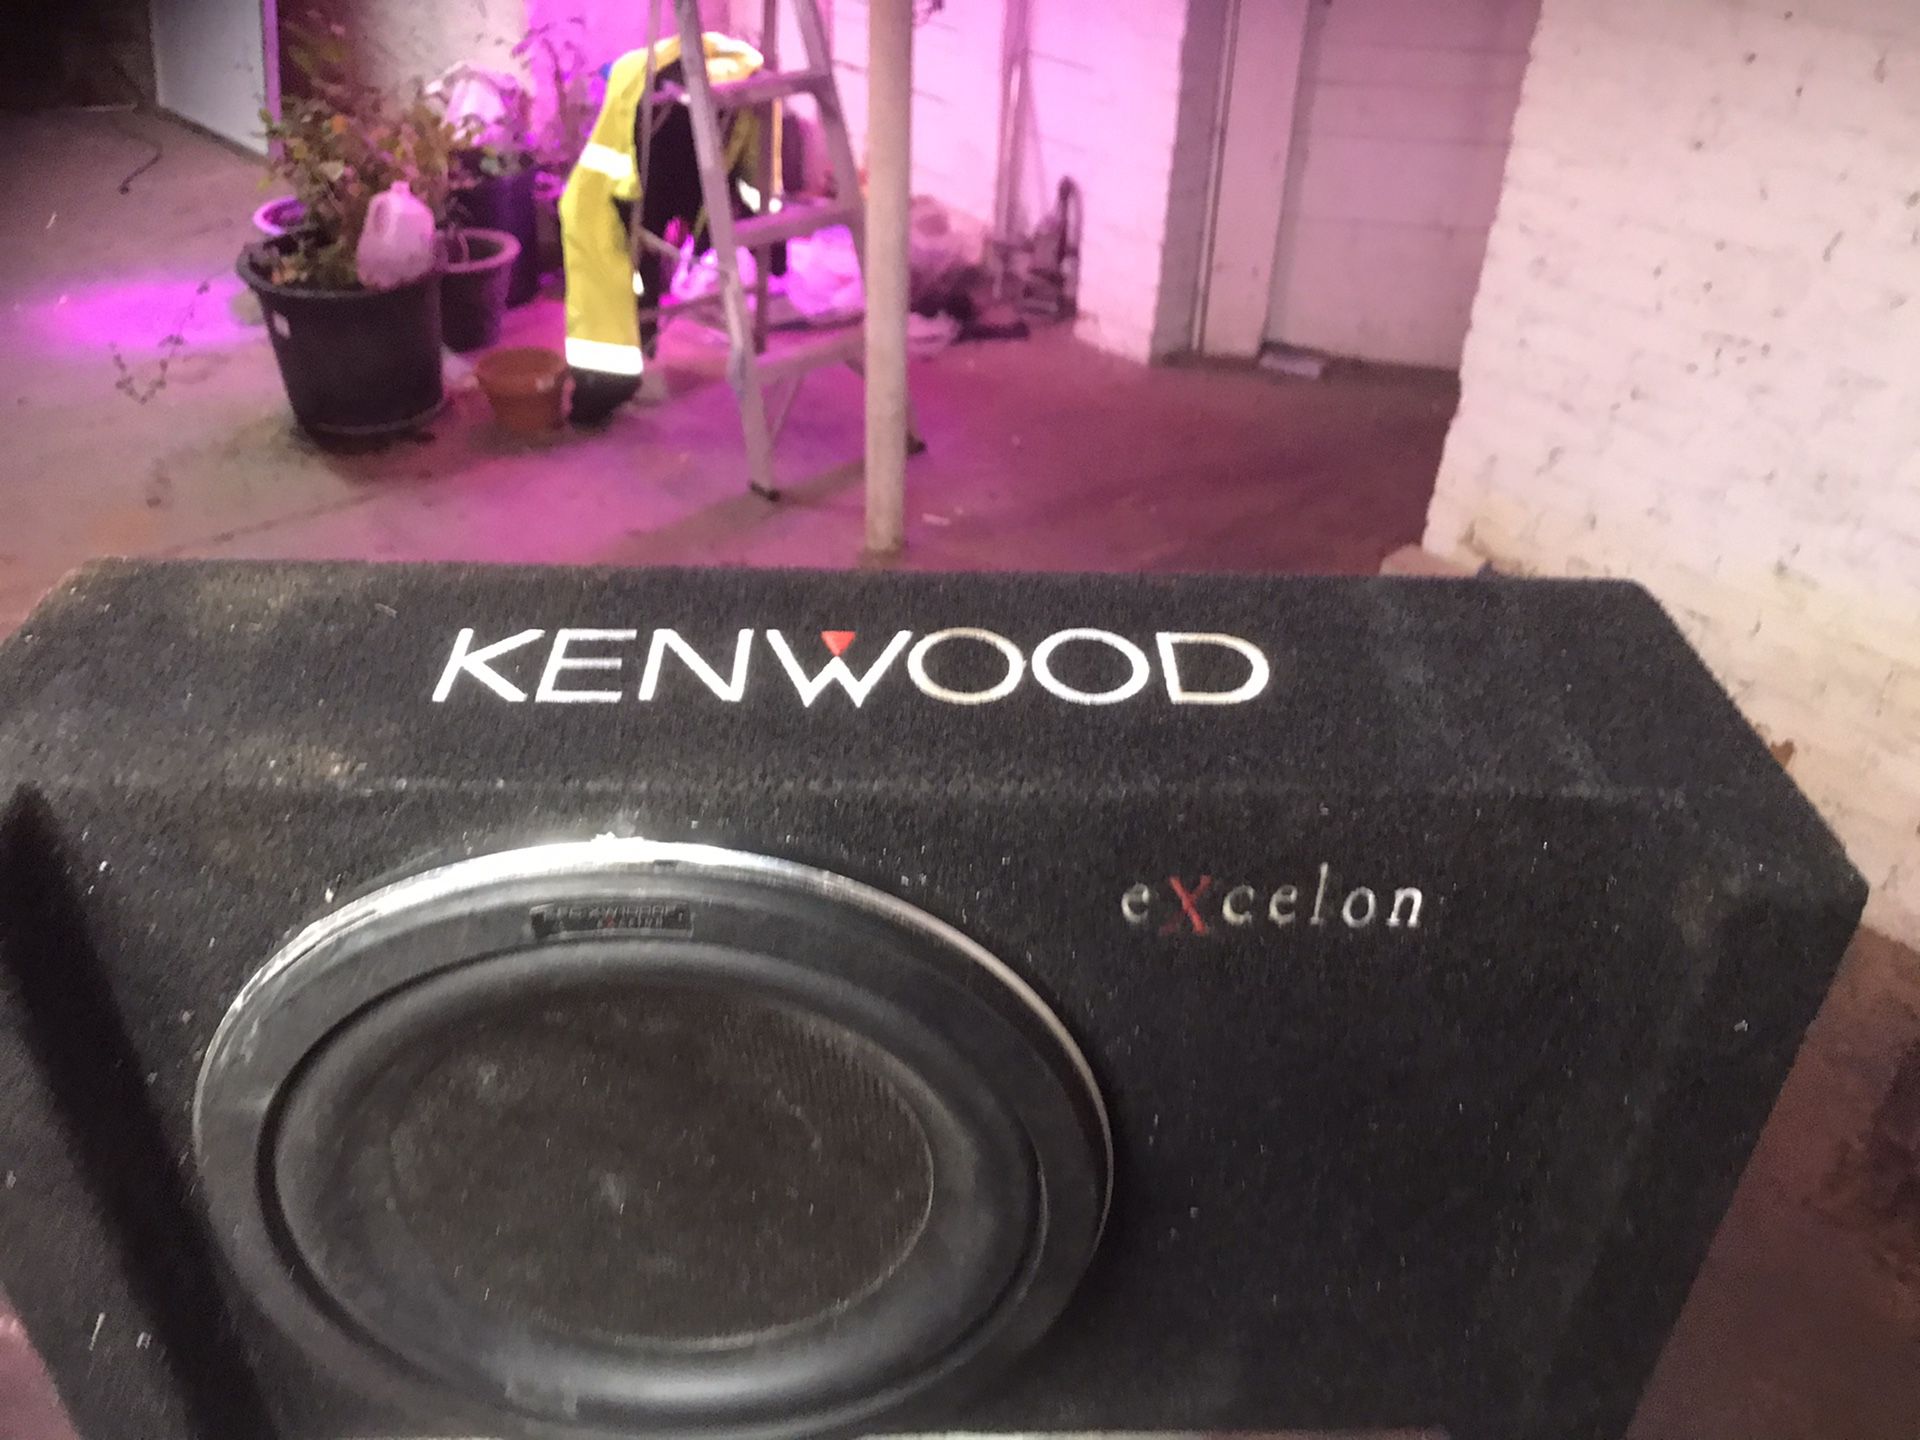 Kenwood sub woofer